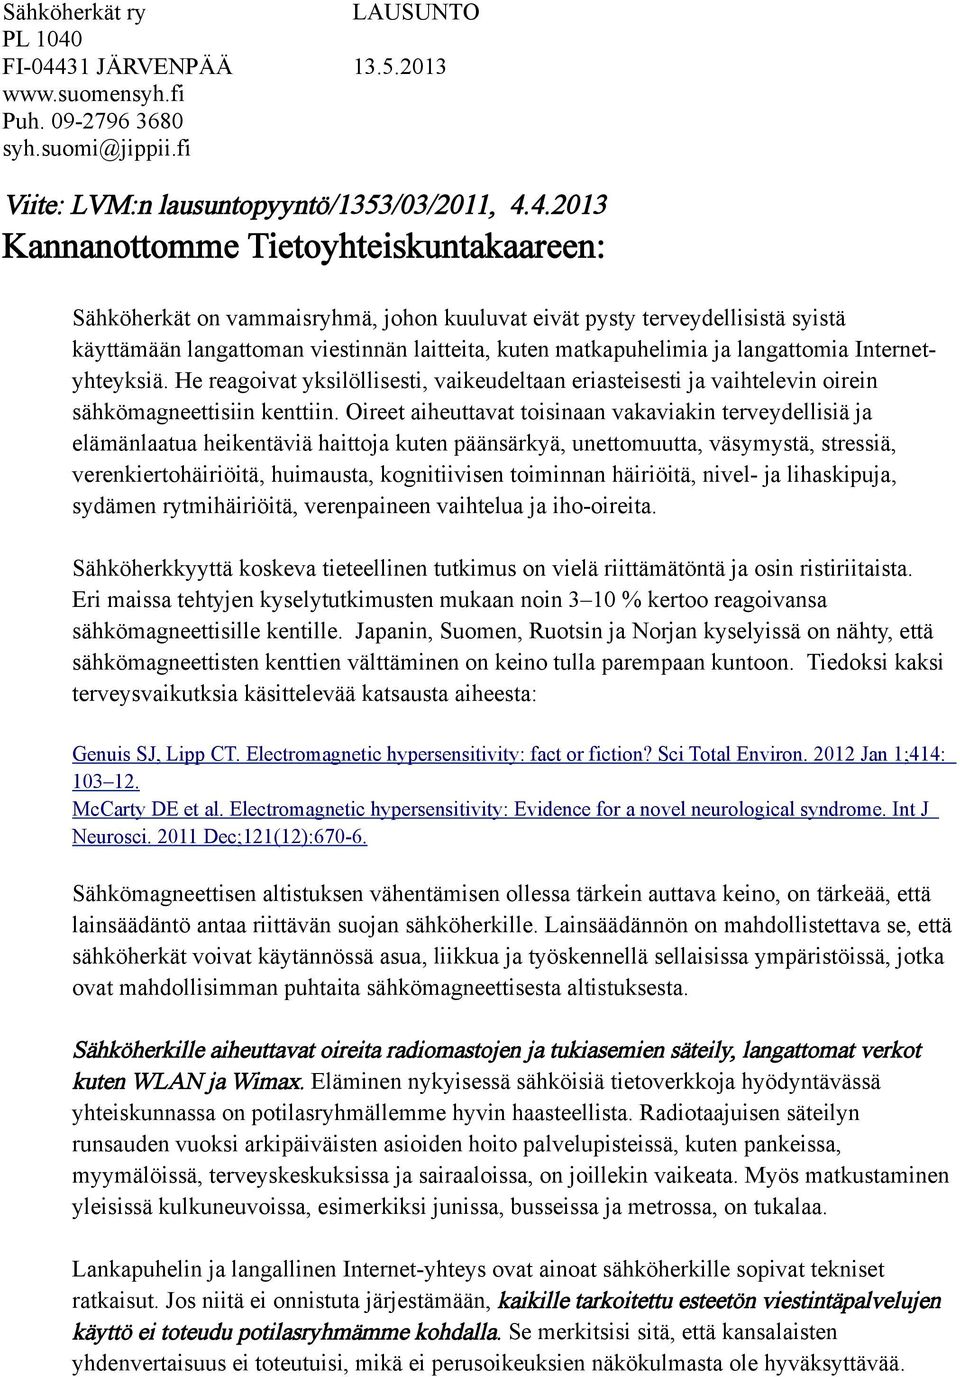 31 JÄRVENPÄÄ 13.5.2013 www.suomensyh.fi Puh. 09-2796 3680 syh.suomi@jippii.fi Viite: LVM:n lausuntopyyntö/1353/03/2011, 4.